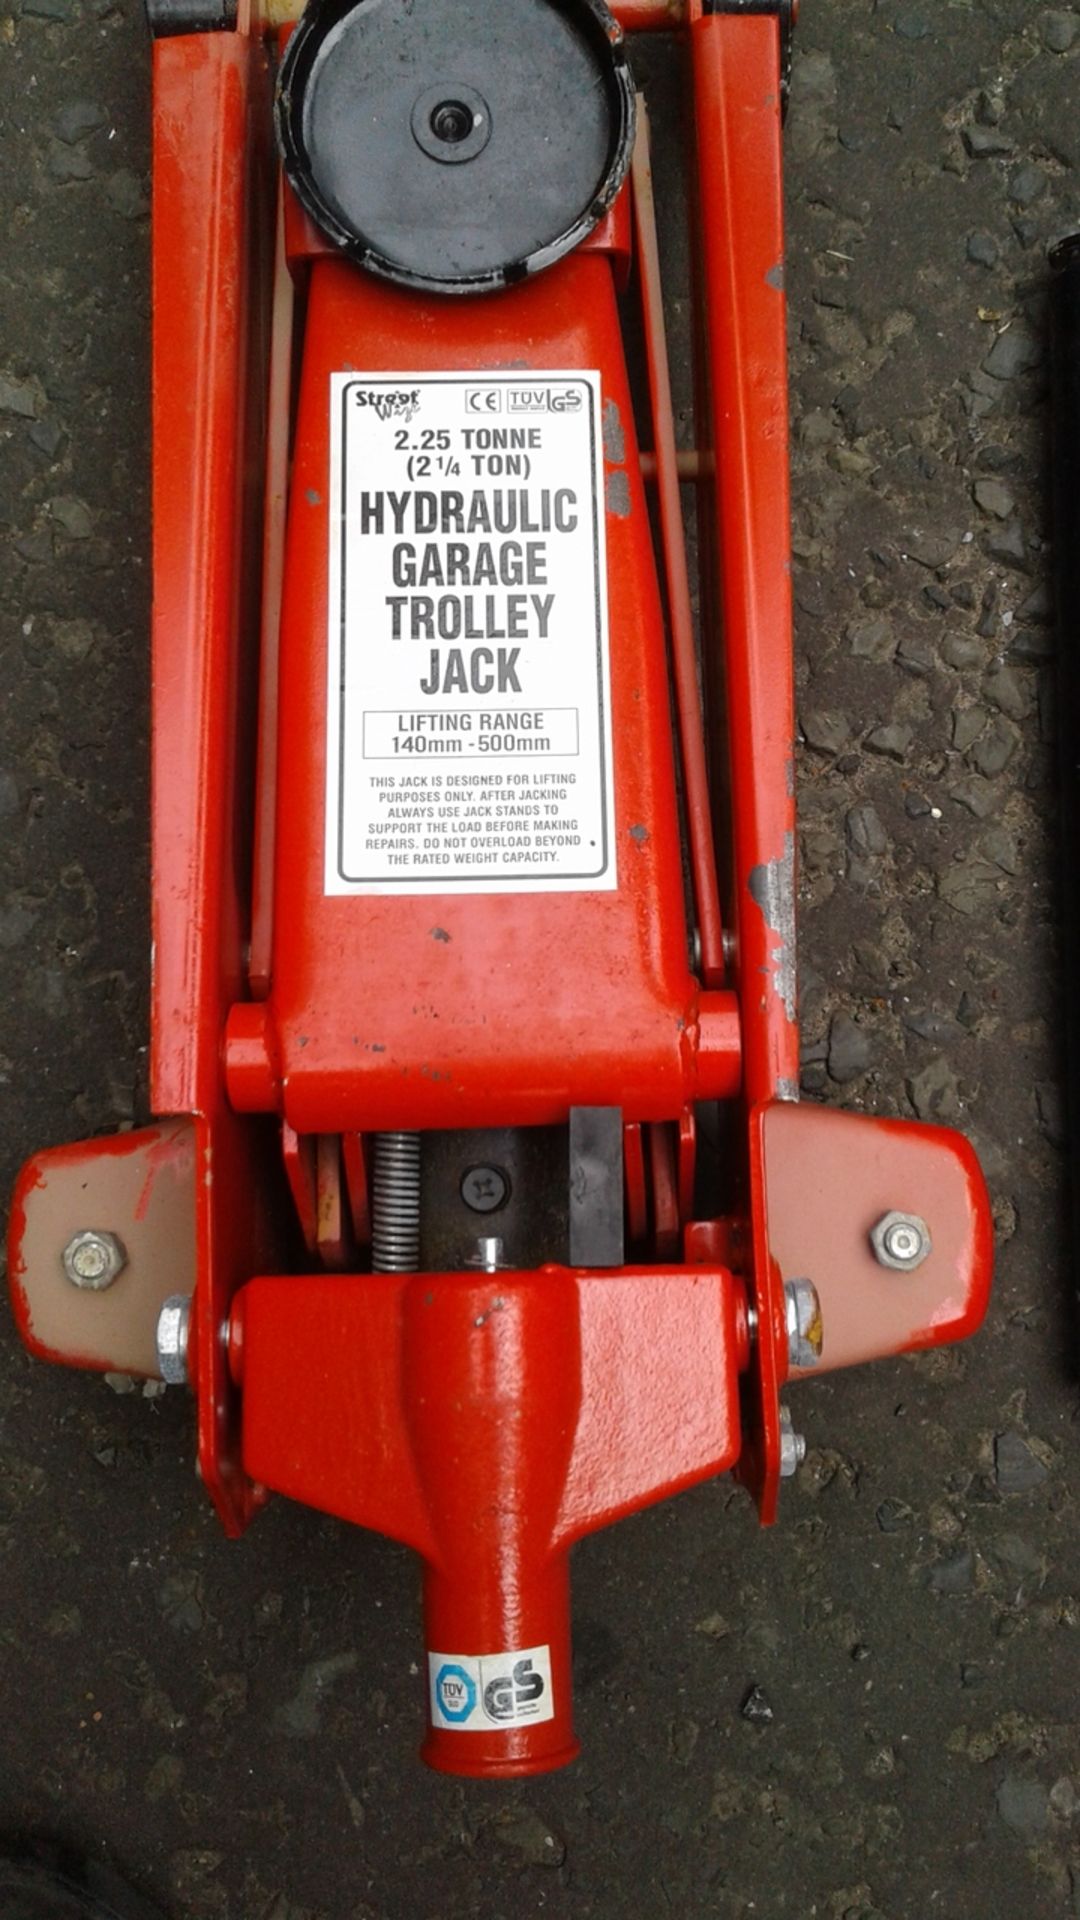 Large size 2.25 Tonne Hydraulic Garage trolley Jack - New - unboxed unused - Image 2 of 3